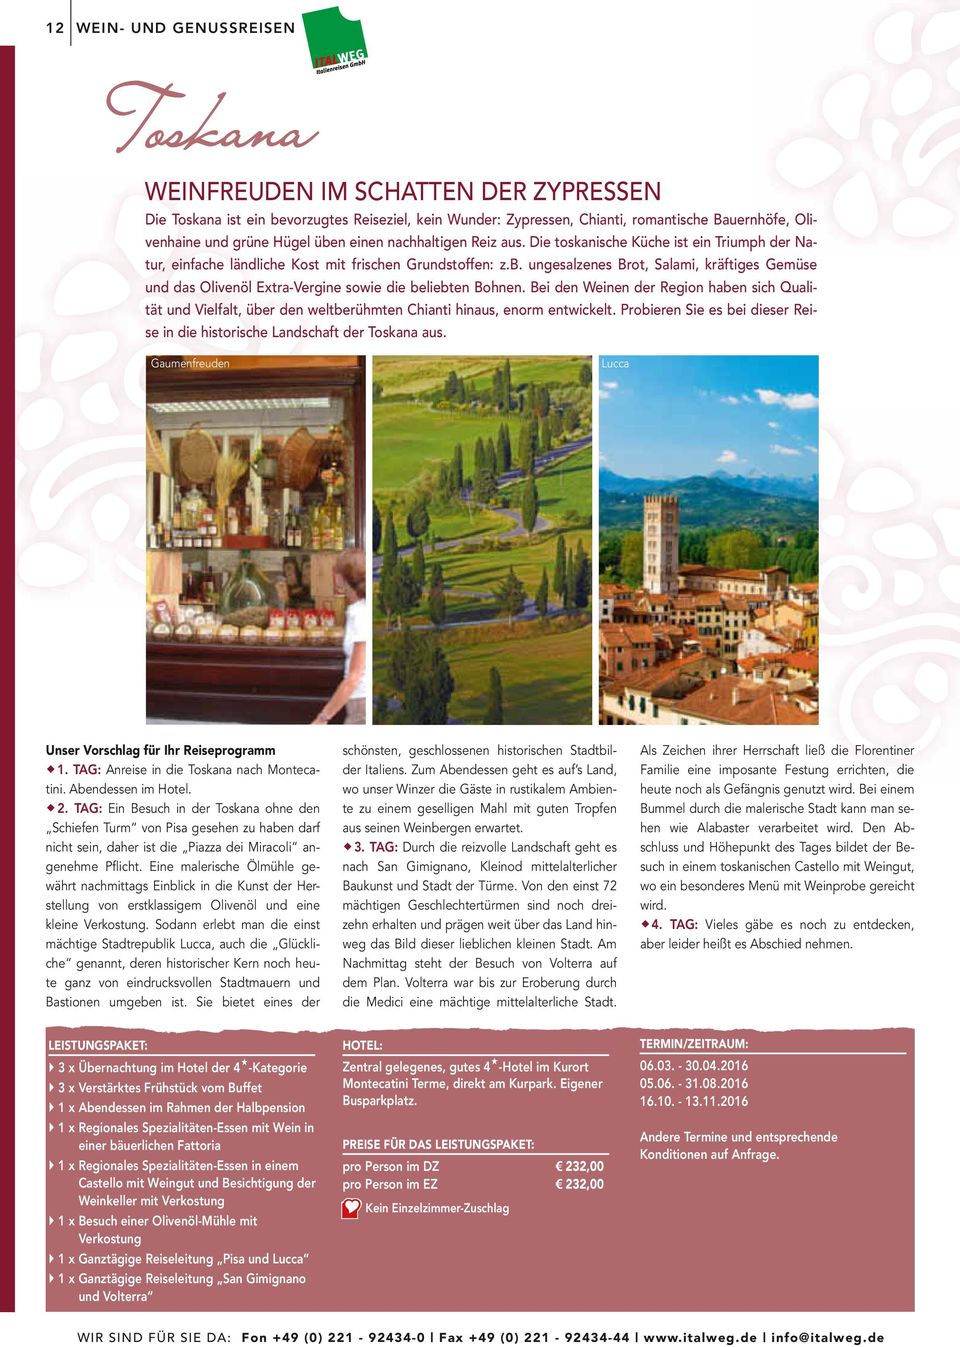 Bei den Weinen der Region haben sich Qualität und Vielfalt, über den weltberühmten Chianti hinaus, enorm entwickelt. Probieren Sie es bei dieser Reise in die historische Landschaft der Toskana aus.